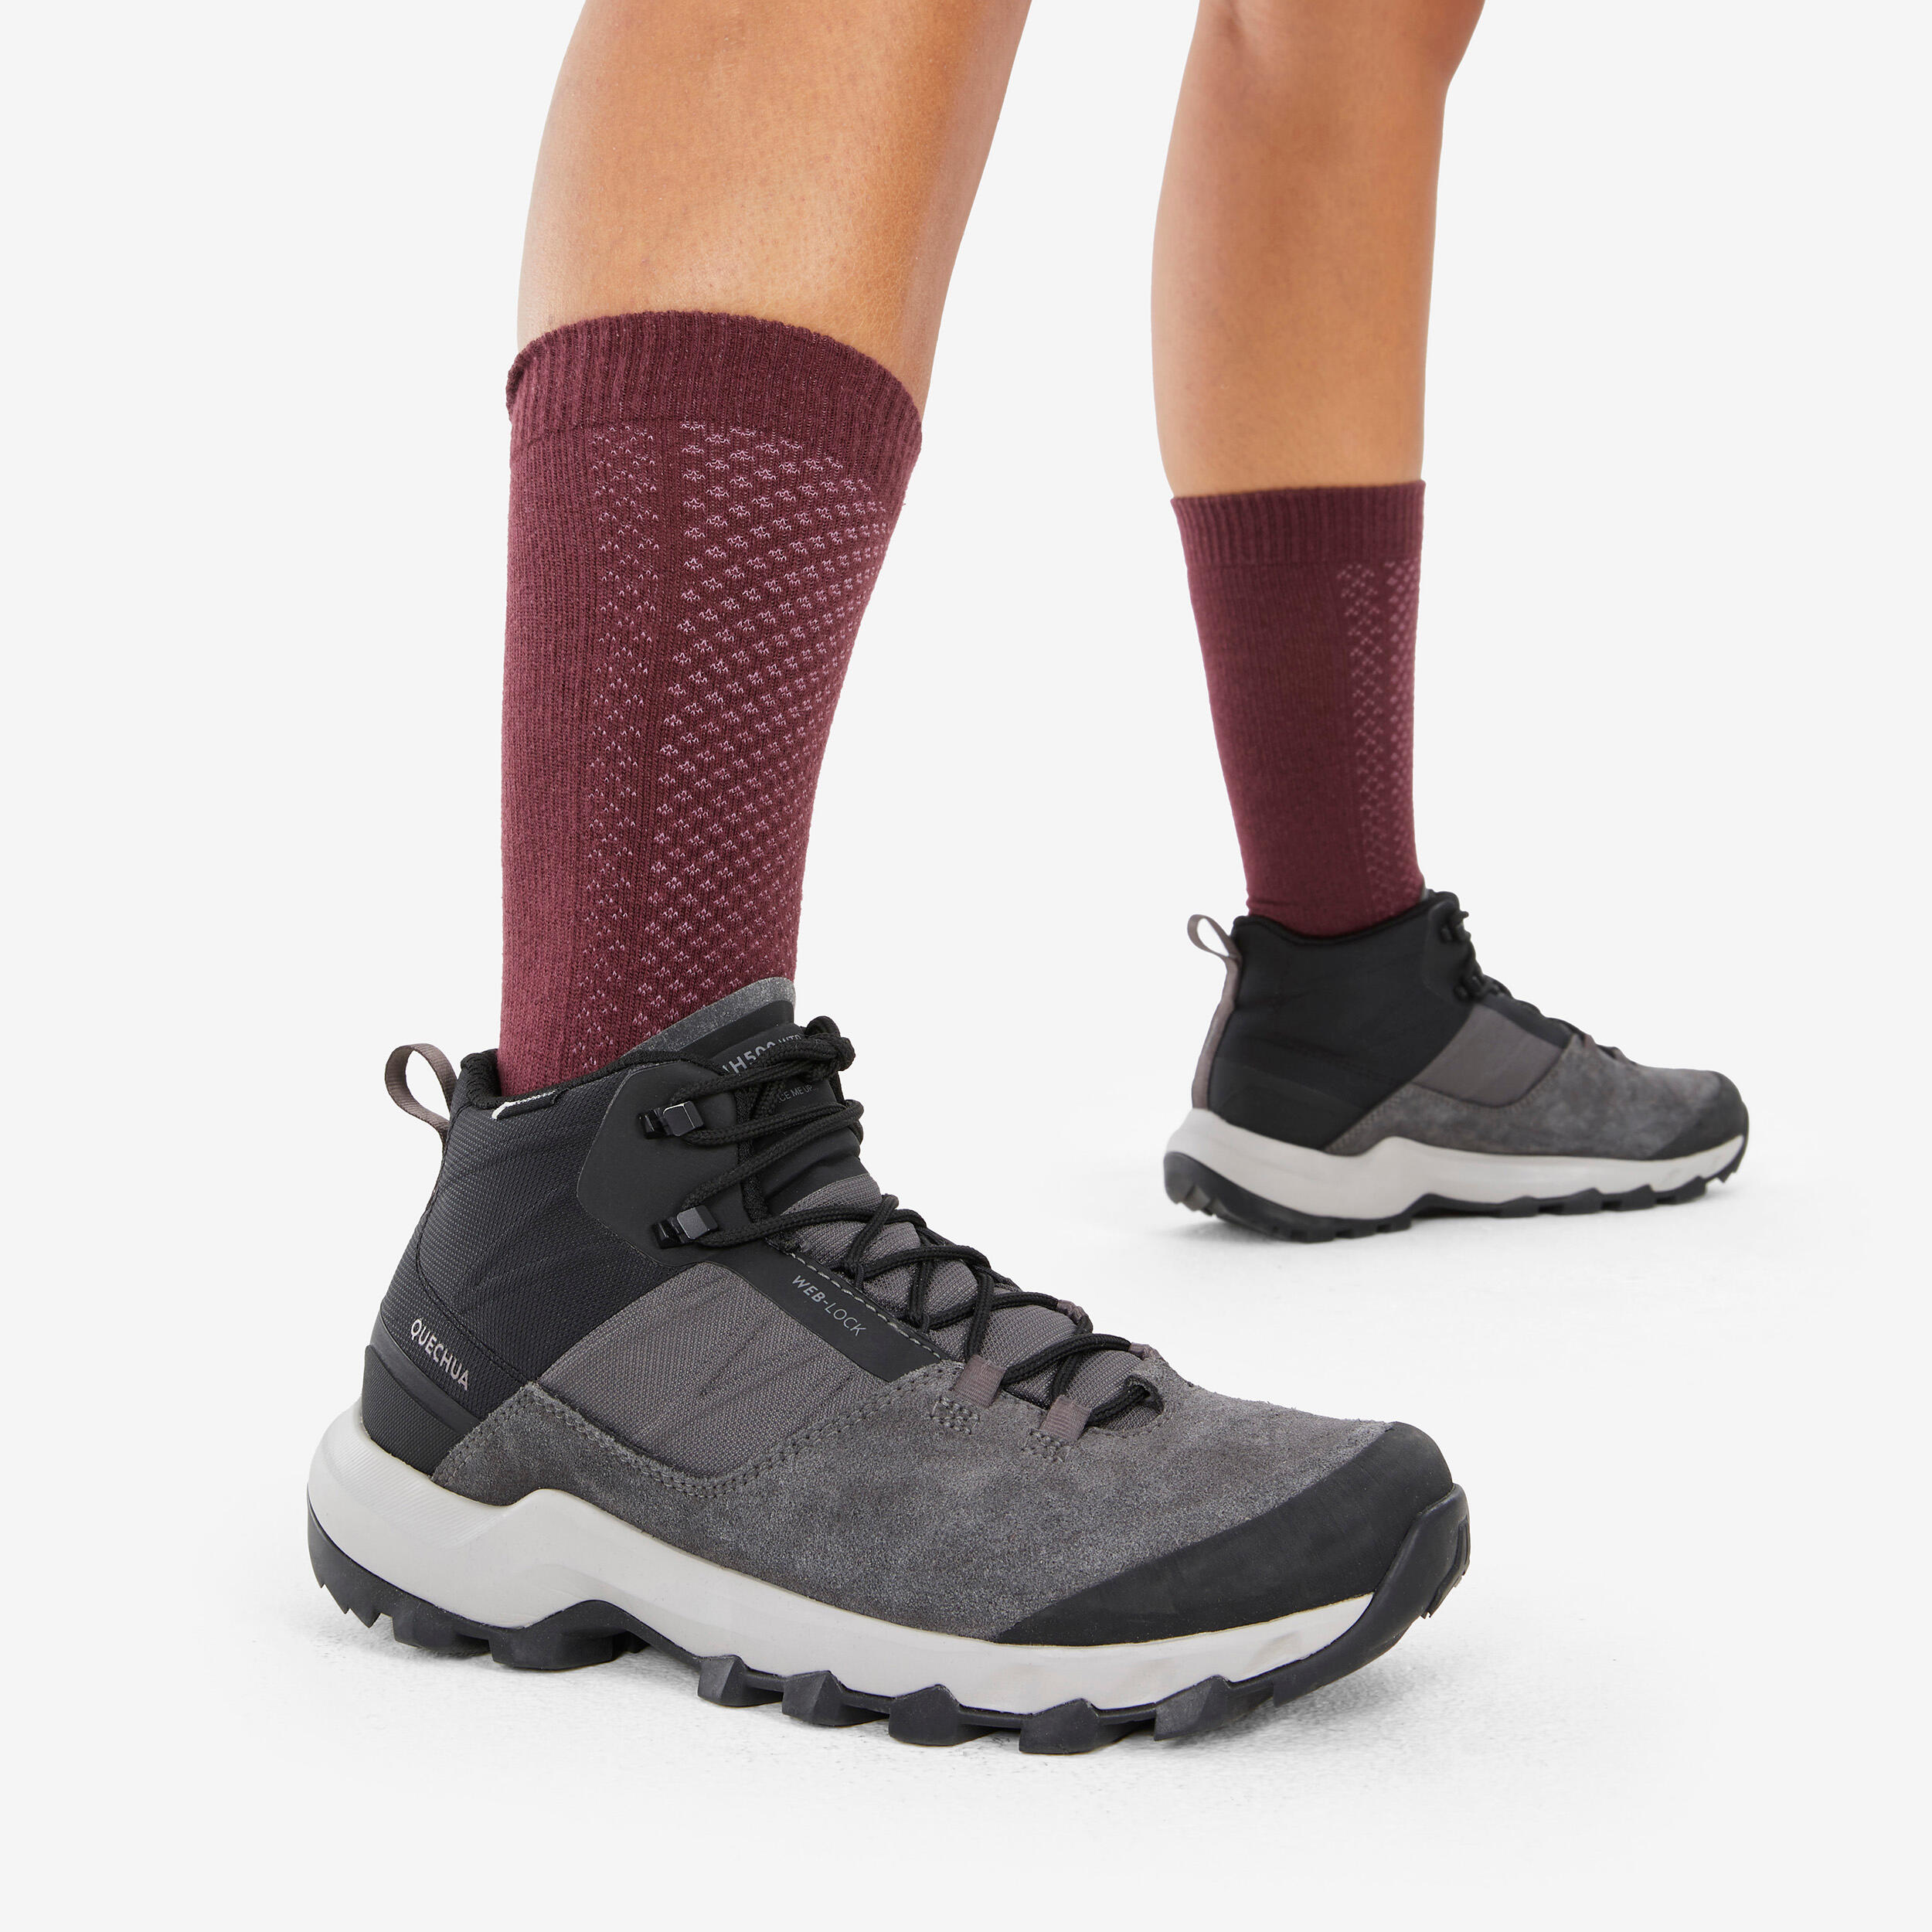 Hike 100 High Socks  - Beige Burgundy-Lyocell& Linen-Pack of 2 pairs 7/11